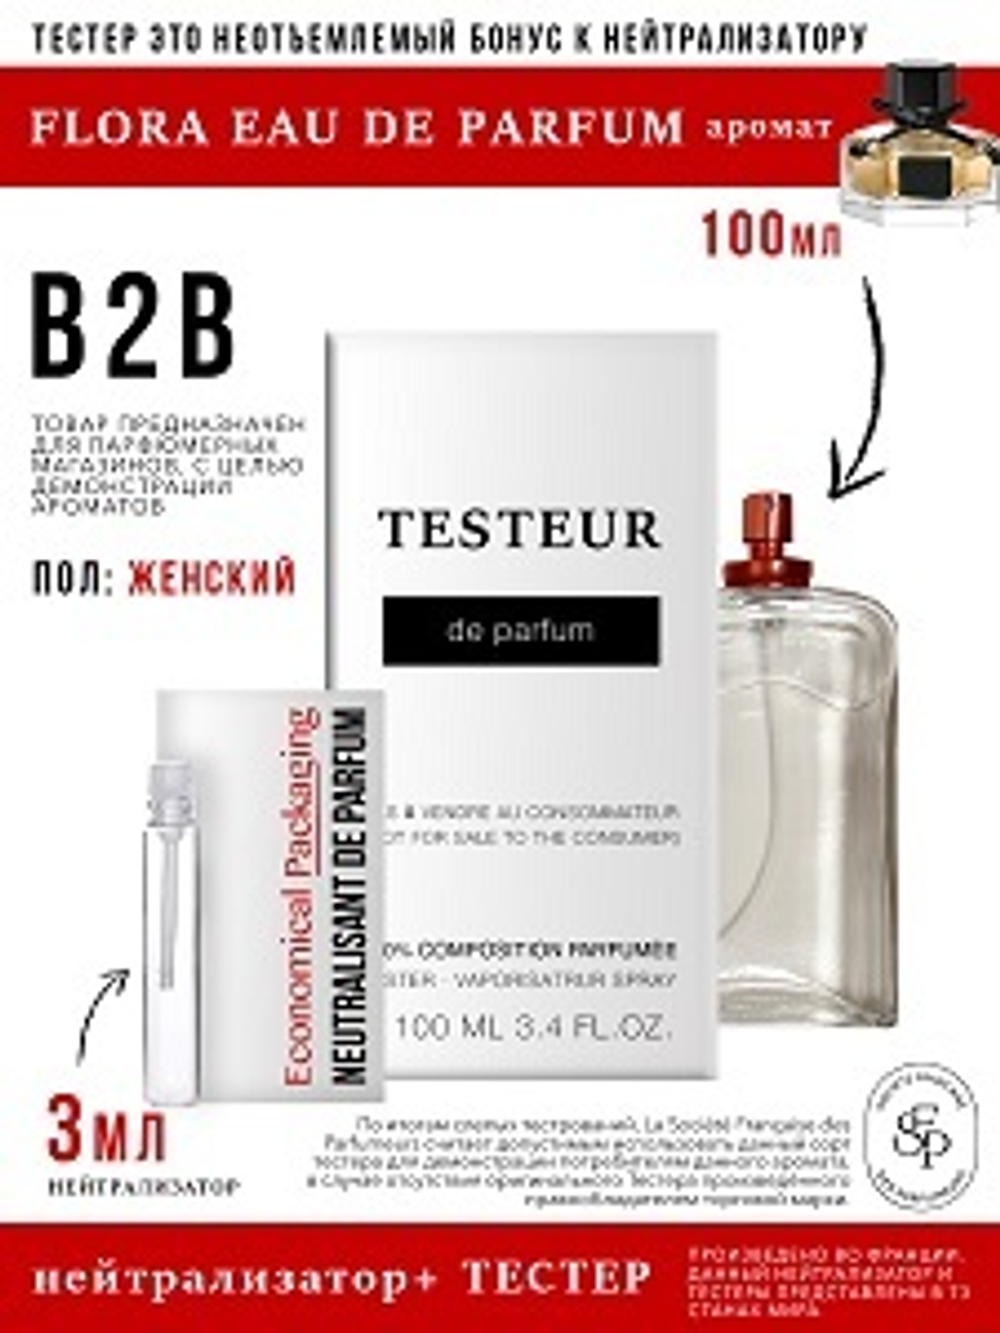 Нейтрализатор аромата 3мл + БОНУС ТЕСТЕР Flora Eau de Parfum, женский, 100мл